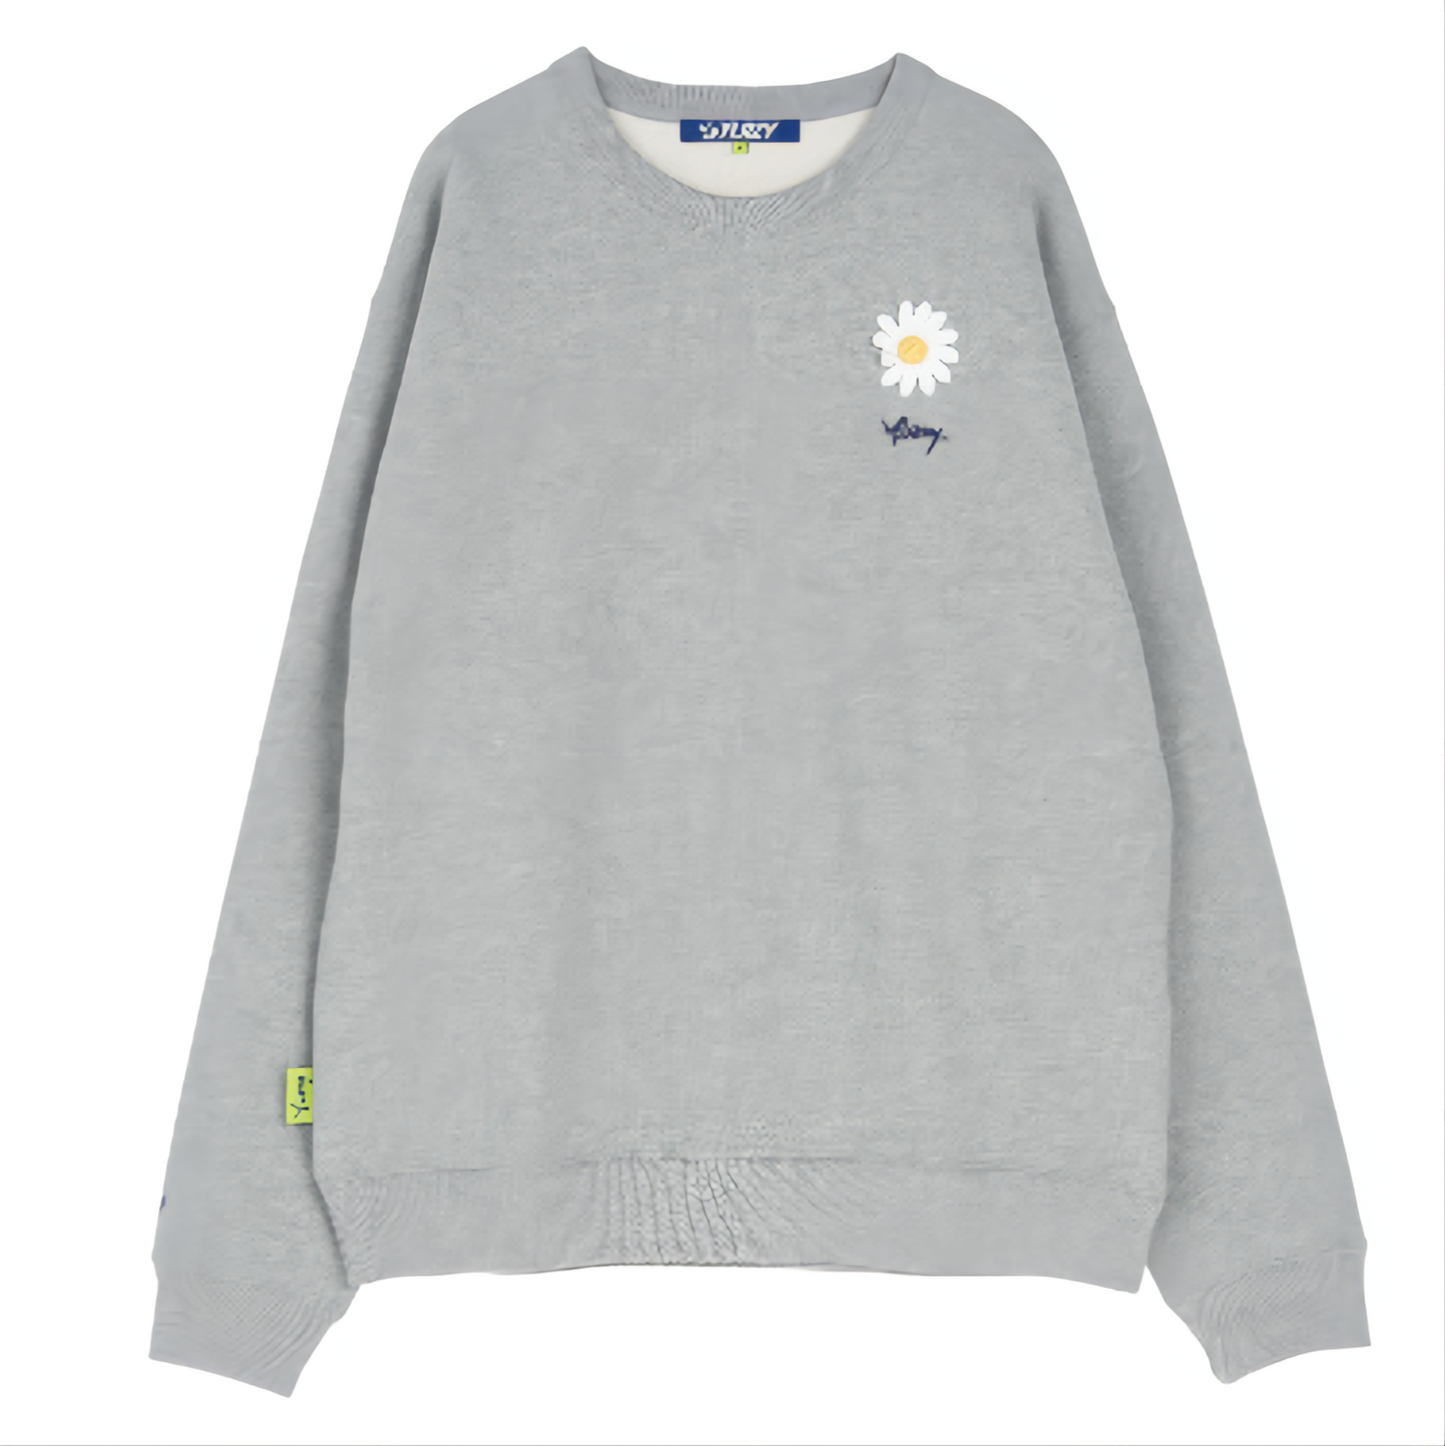 Y.Lazy Little Daisy Long Sleeve Sweatshirt Grey